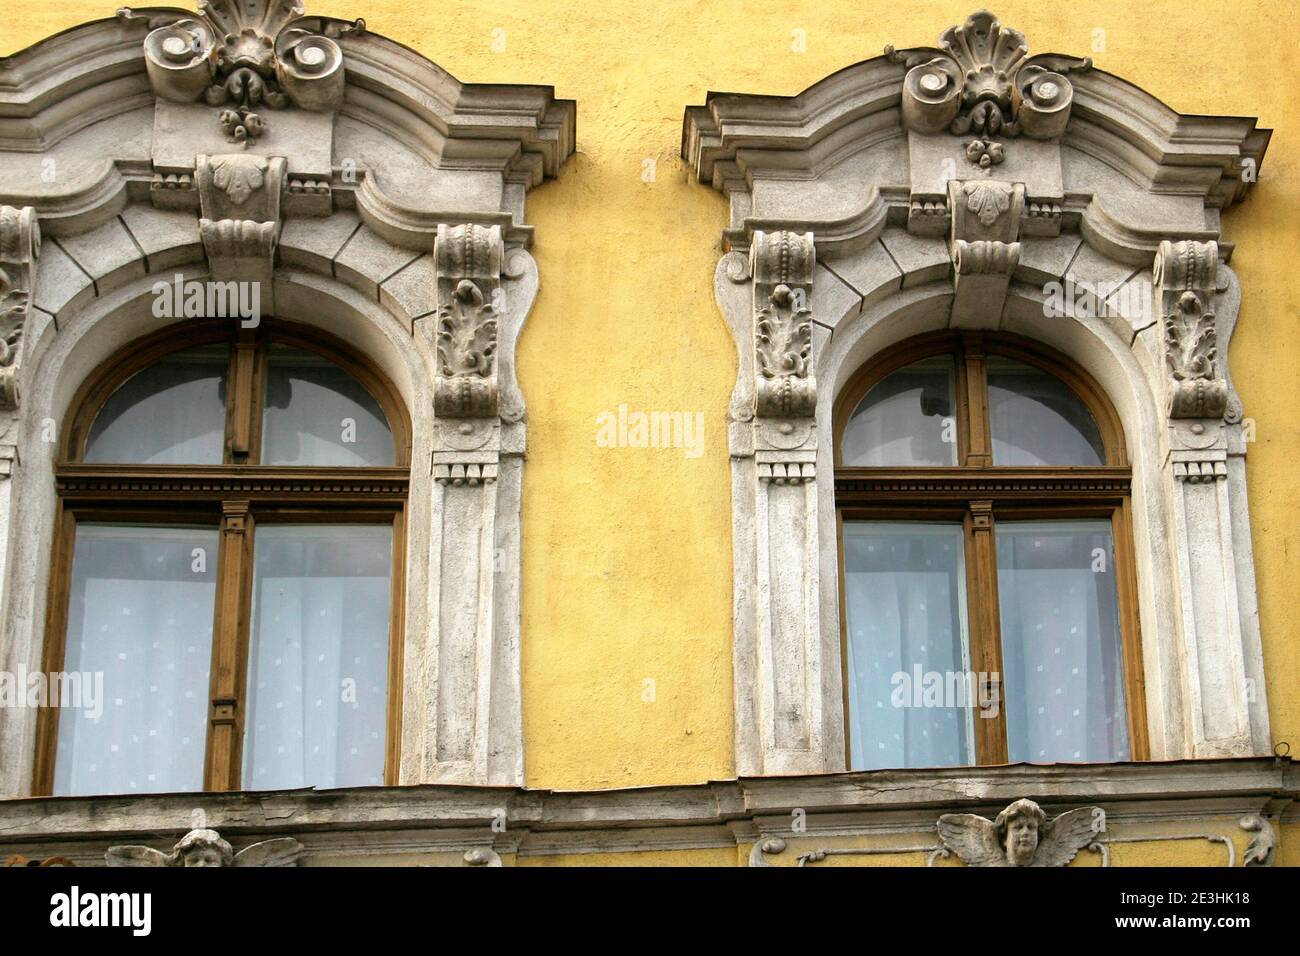 Détails architecturaux sur un bâtiment du XIXe siècle à Oradea, Roumanie Banque D'Images